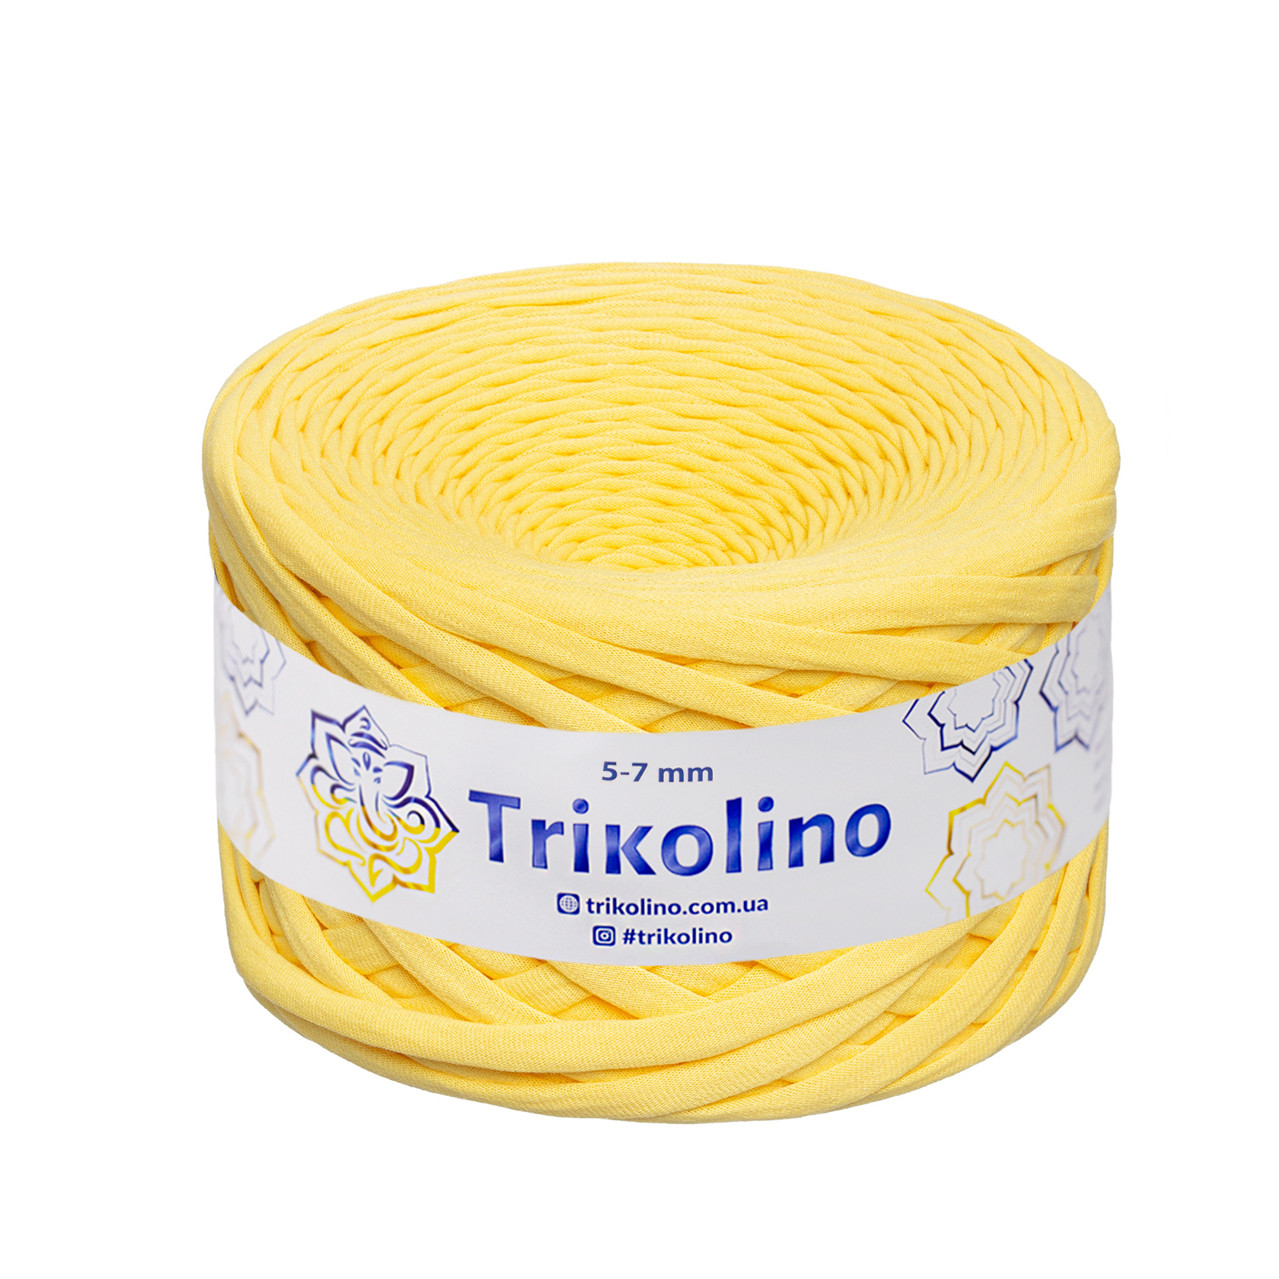 Трикотажна пряжа Trikolino, 5-7 мм., 100 м., Лимон, нитки для в'язання